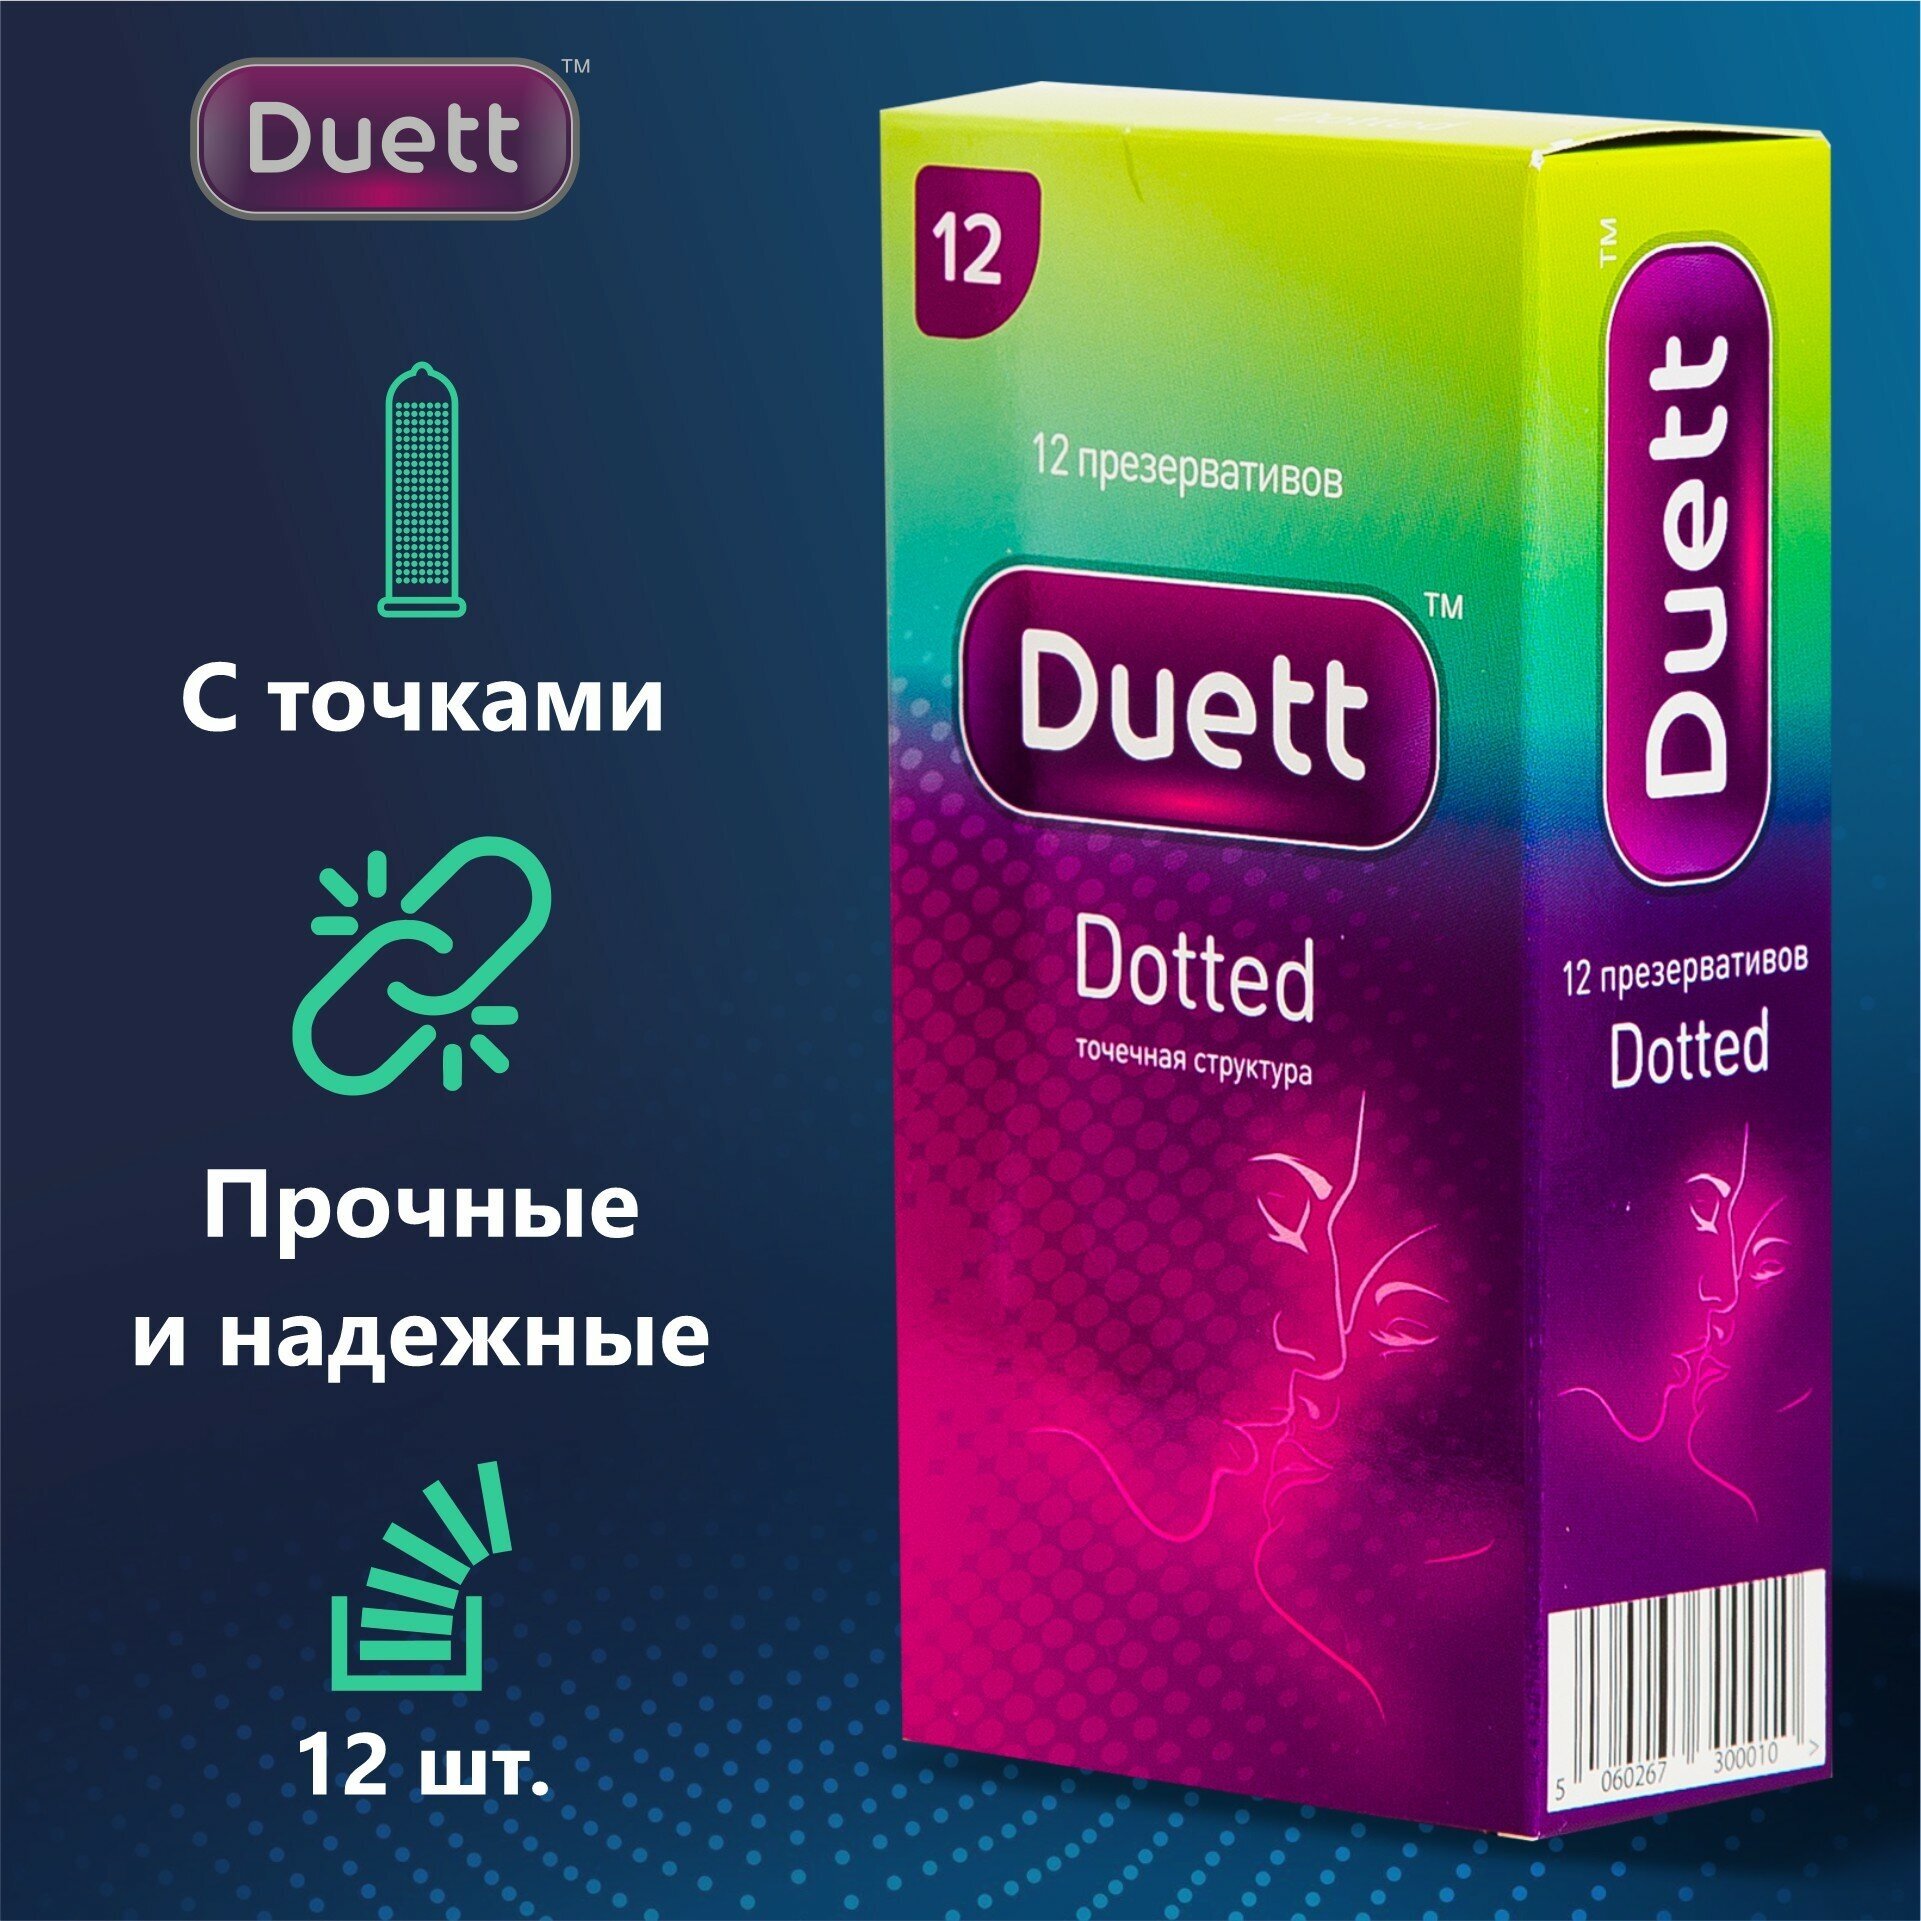 Презервативы DUETT Dotted с точками пупырышками 12 штуки — купить в интернет-магазине по низкой цене на Яндекс Маркете